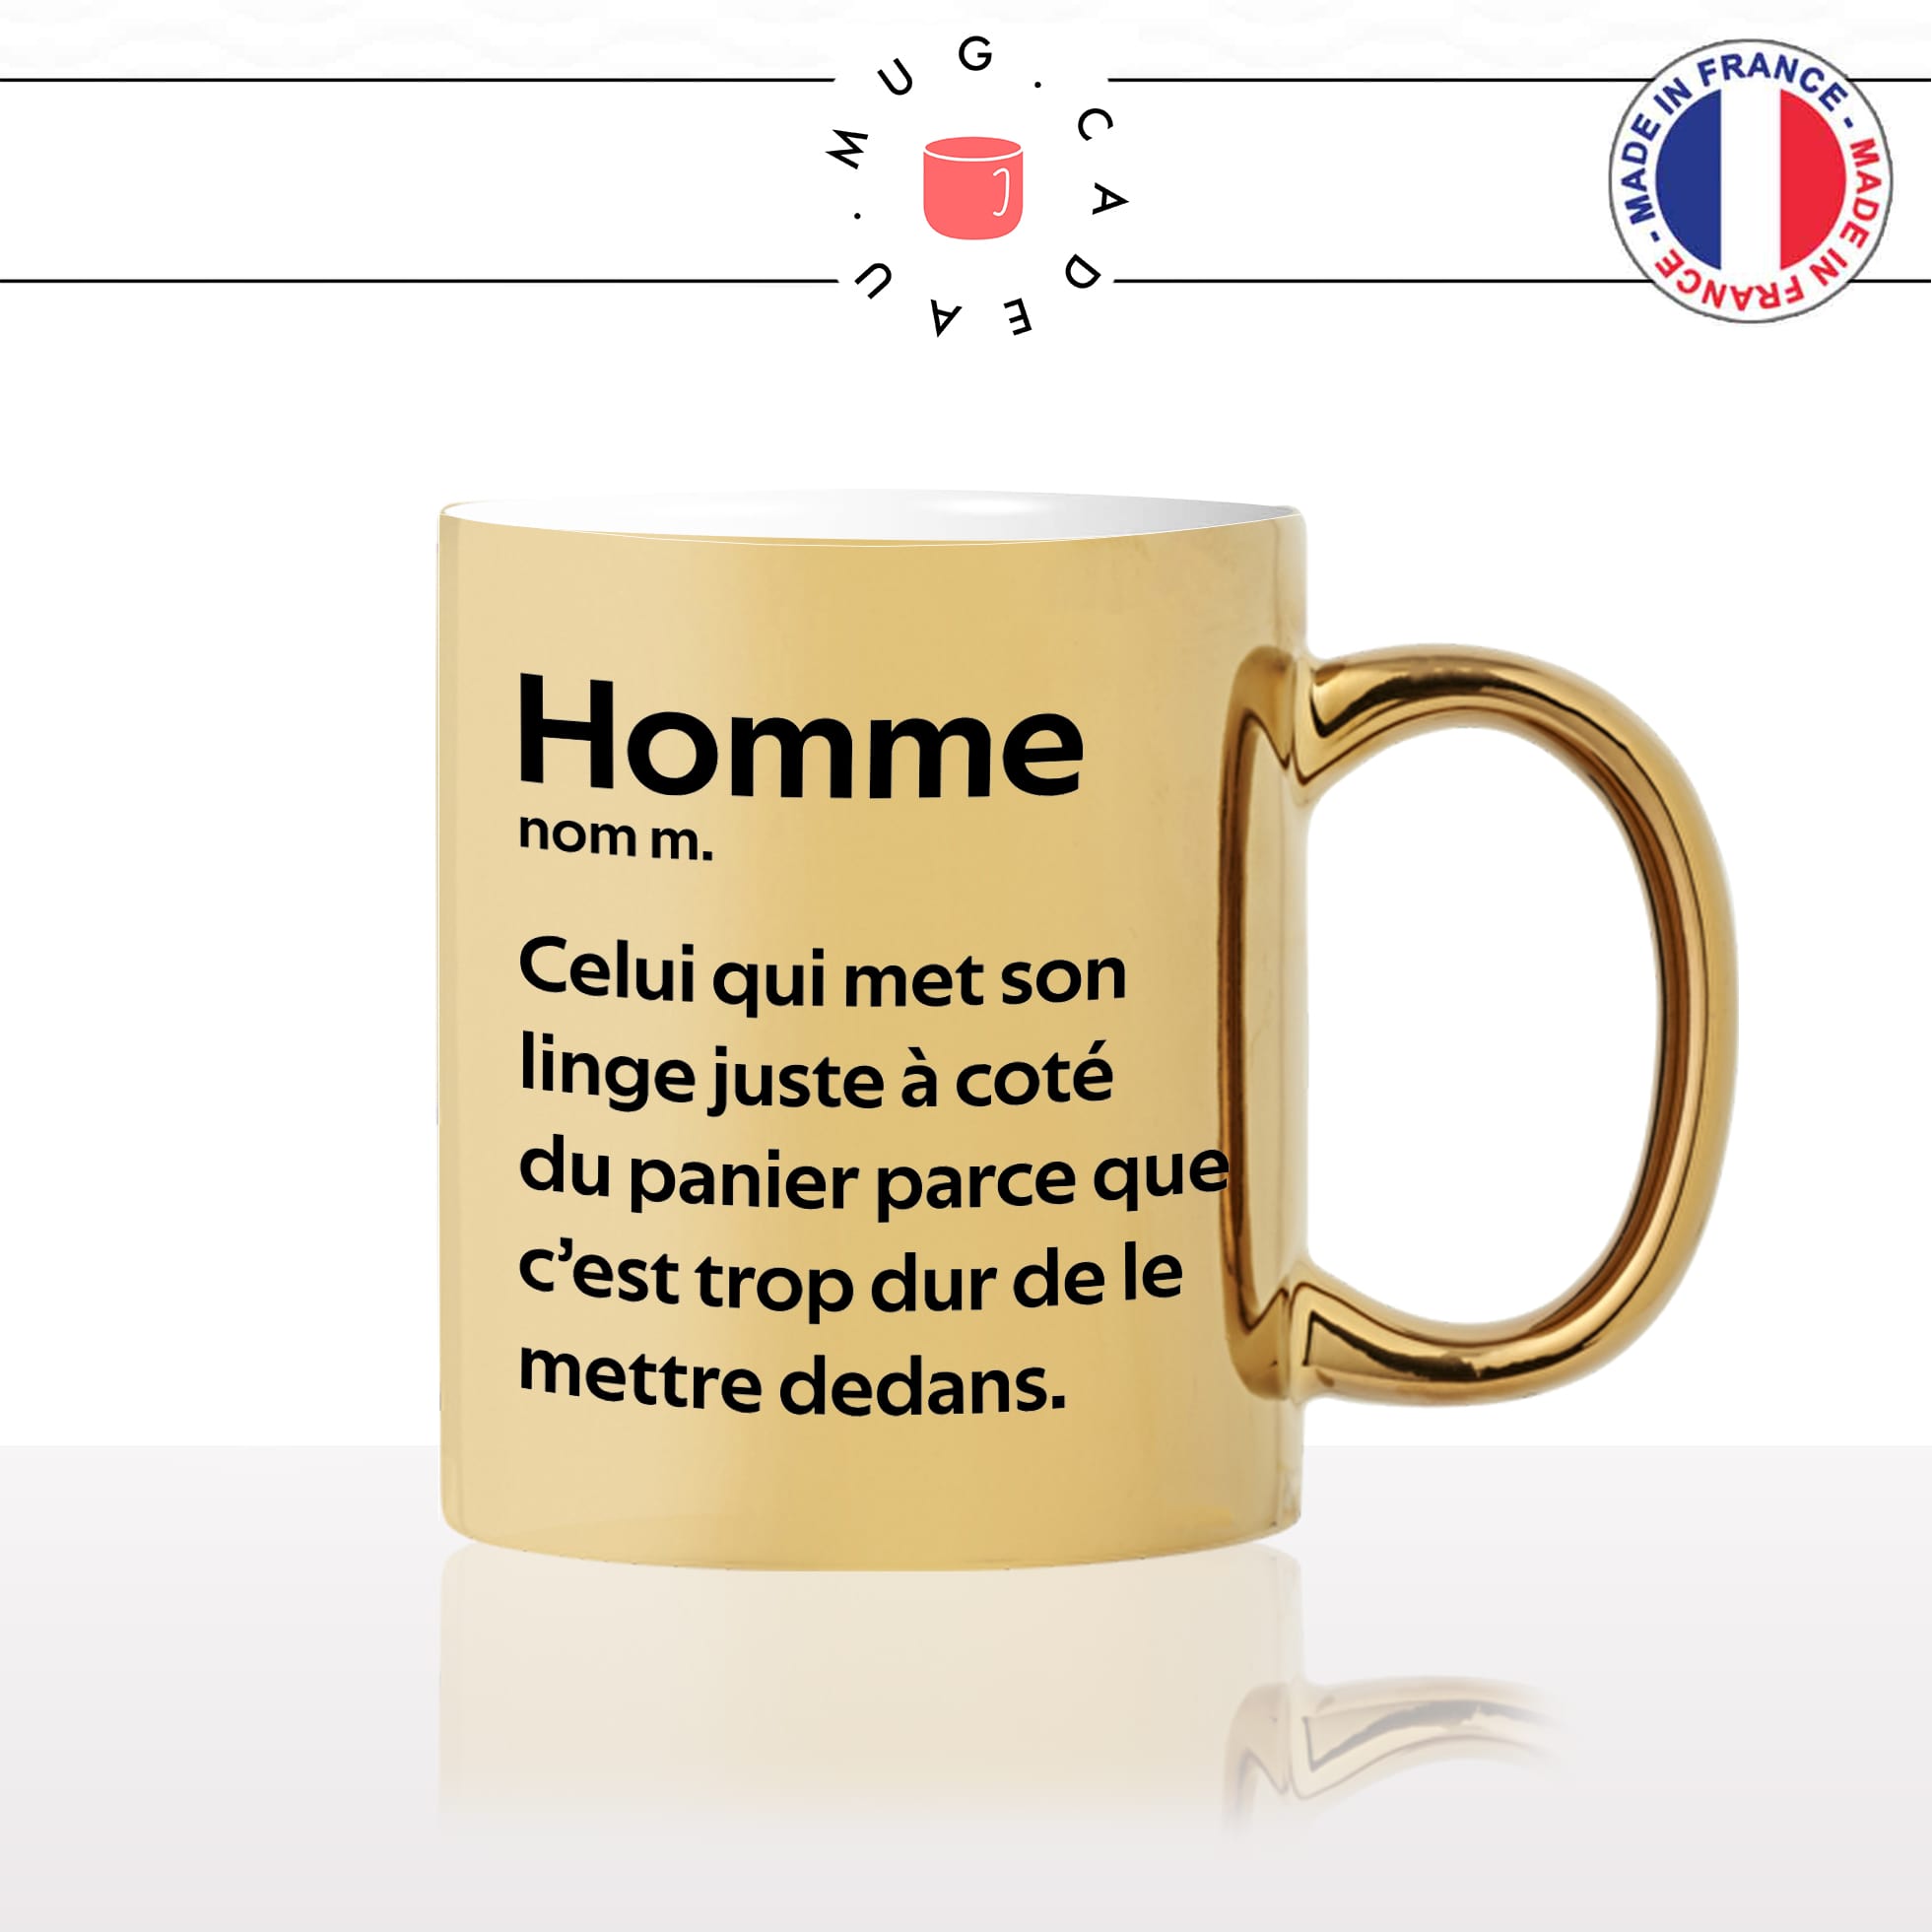 mug-tasse-or-doré-gold-homme-définition-met-son-linge-a-coté-du-panier-a-linge-couple-ménage-humour-fun-idée-cadeau-originale-cool2-min